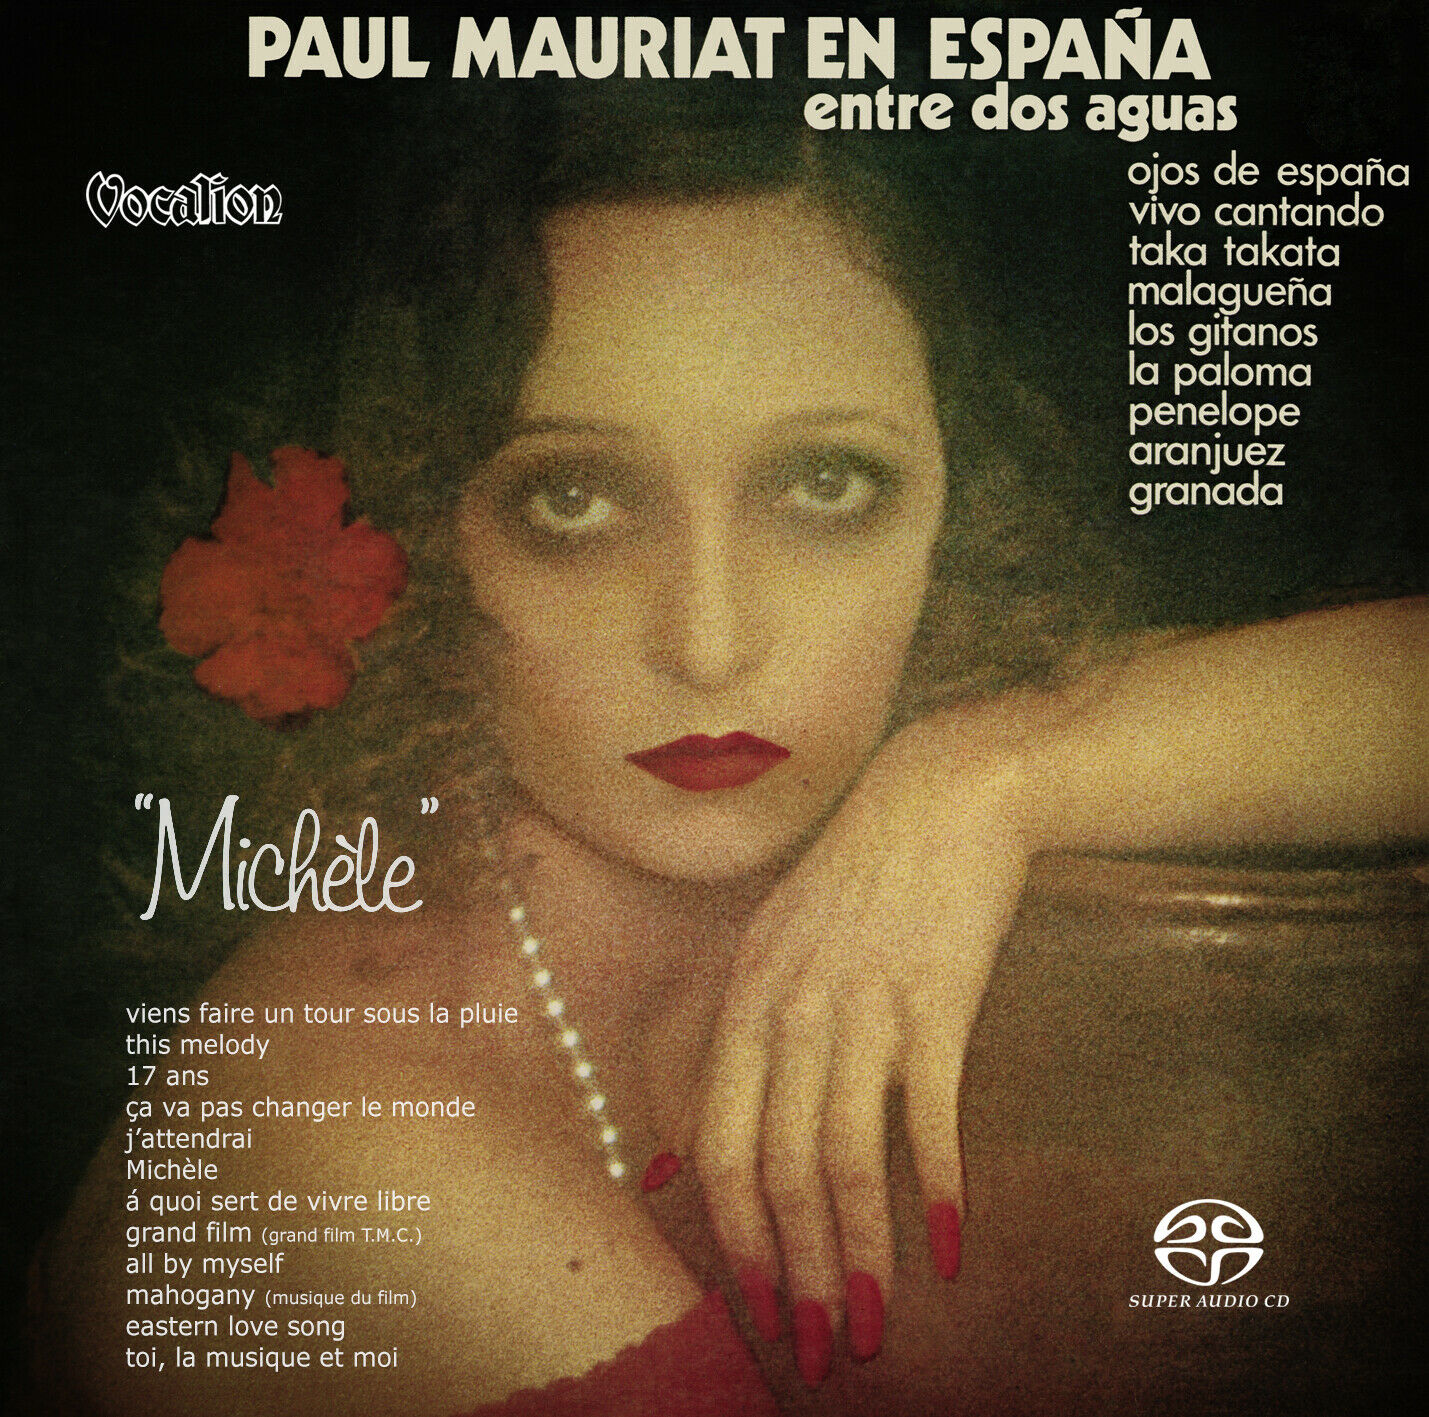 Paul Mauriat – En Espana & Michele (1975/1976) [Reissue 2019] SACD ISO + Hi-Res FLAC